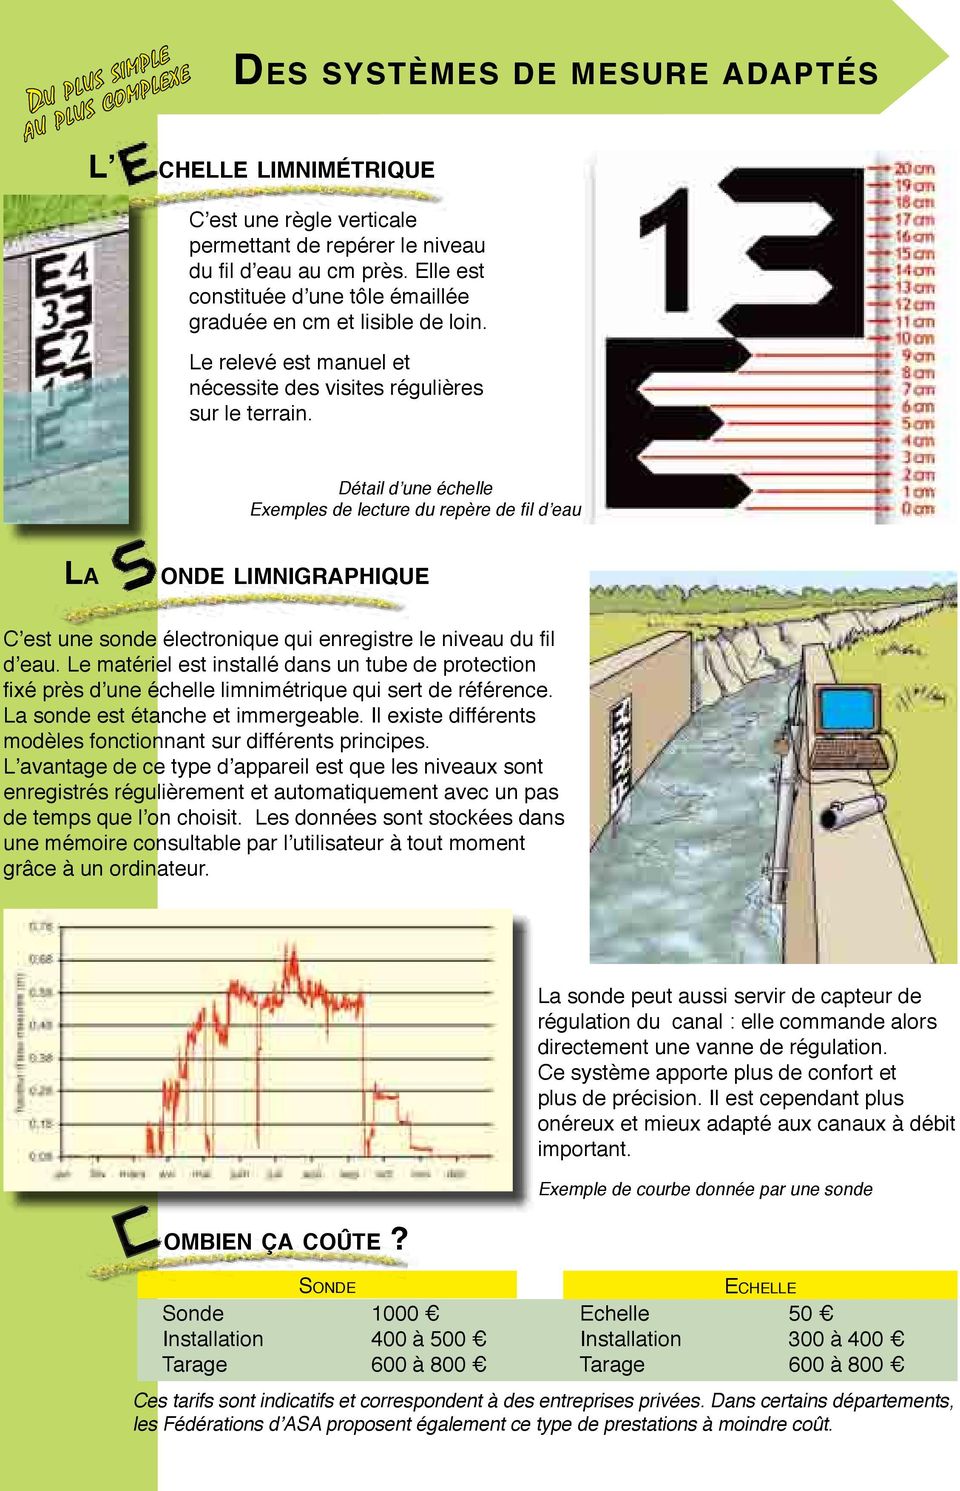 Détail d une échelle Exemples de lecture du repère de fil d eau La onde limnigraphique C est une sonde électronique qui enregistre le niveau du fil d eau.